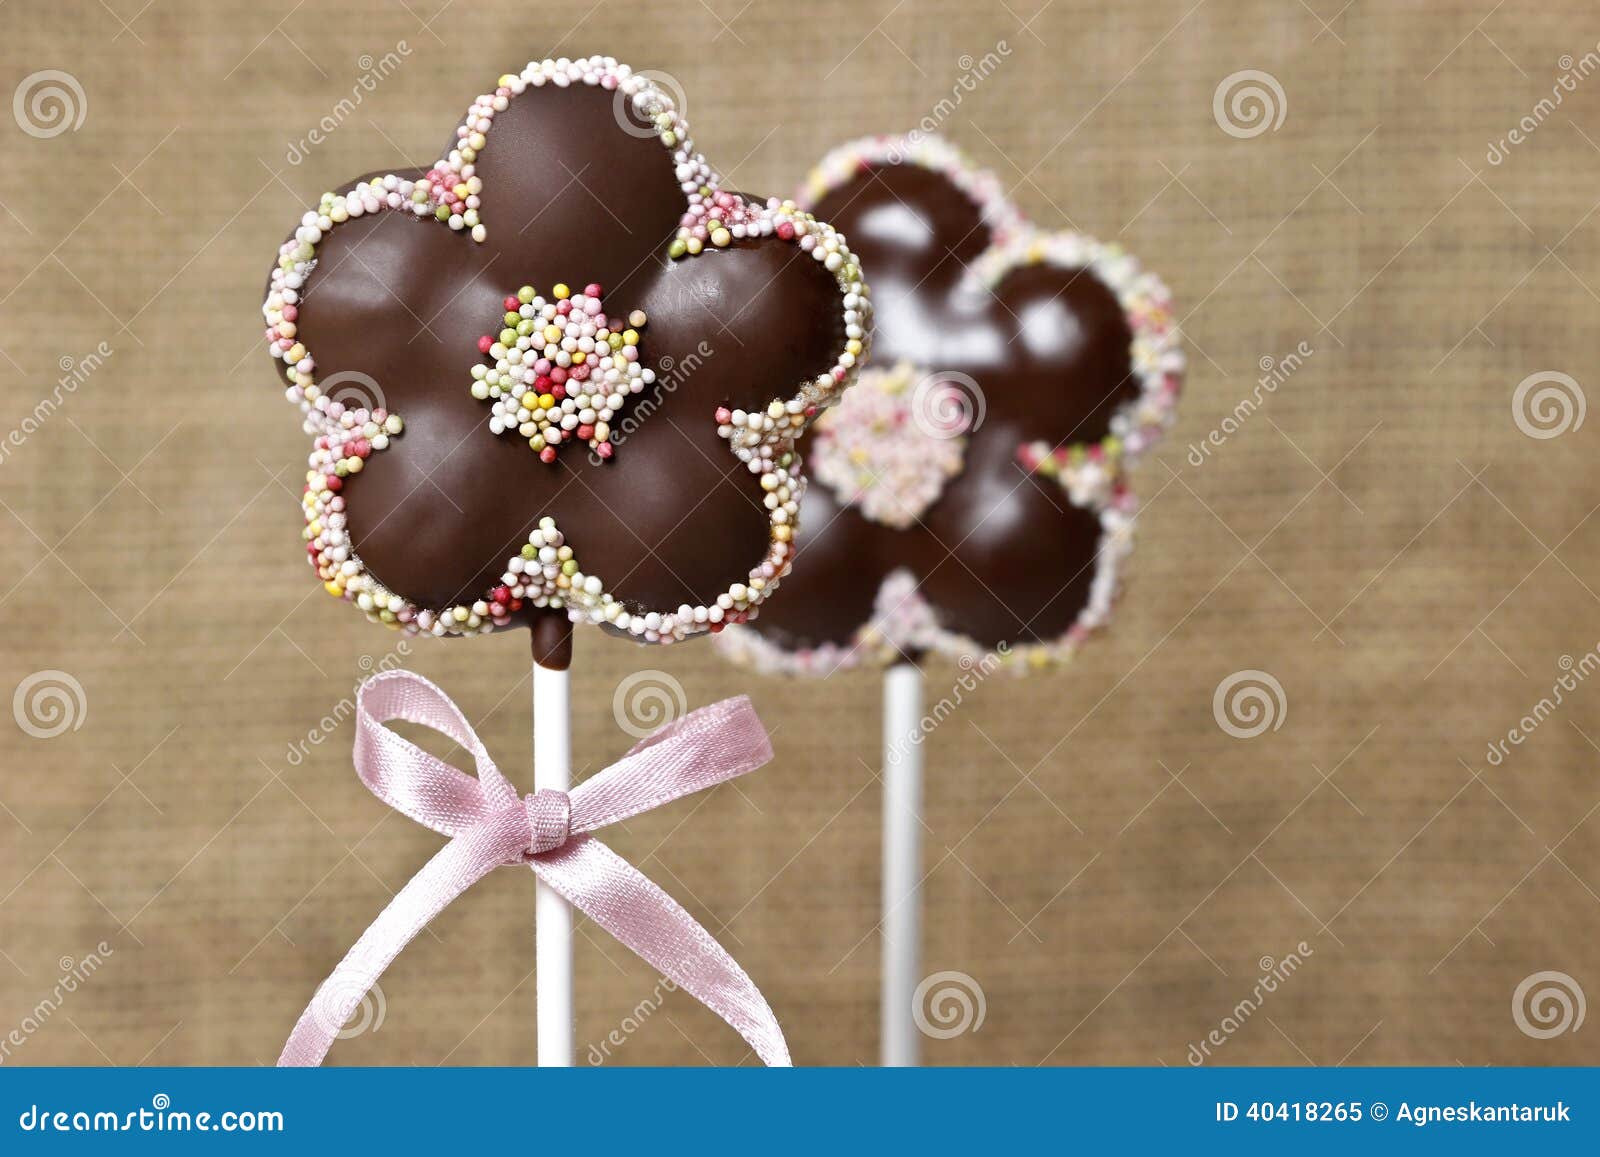 O Bolo De Chocolate Estala Na Forma Da Flor Imagem de Stock - Imagem de  pirulito, luxo: 40418265